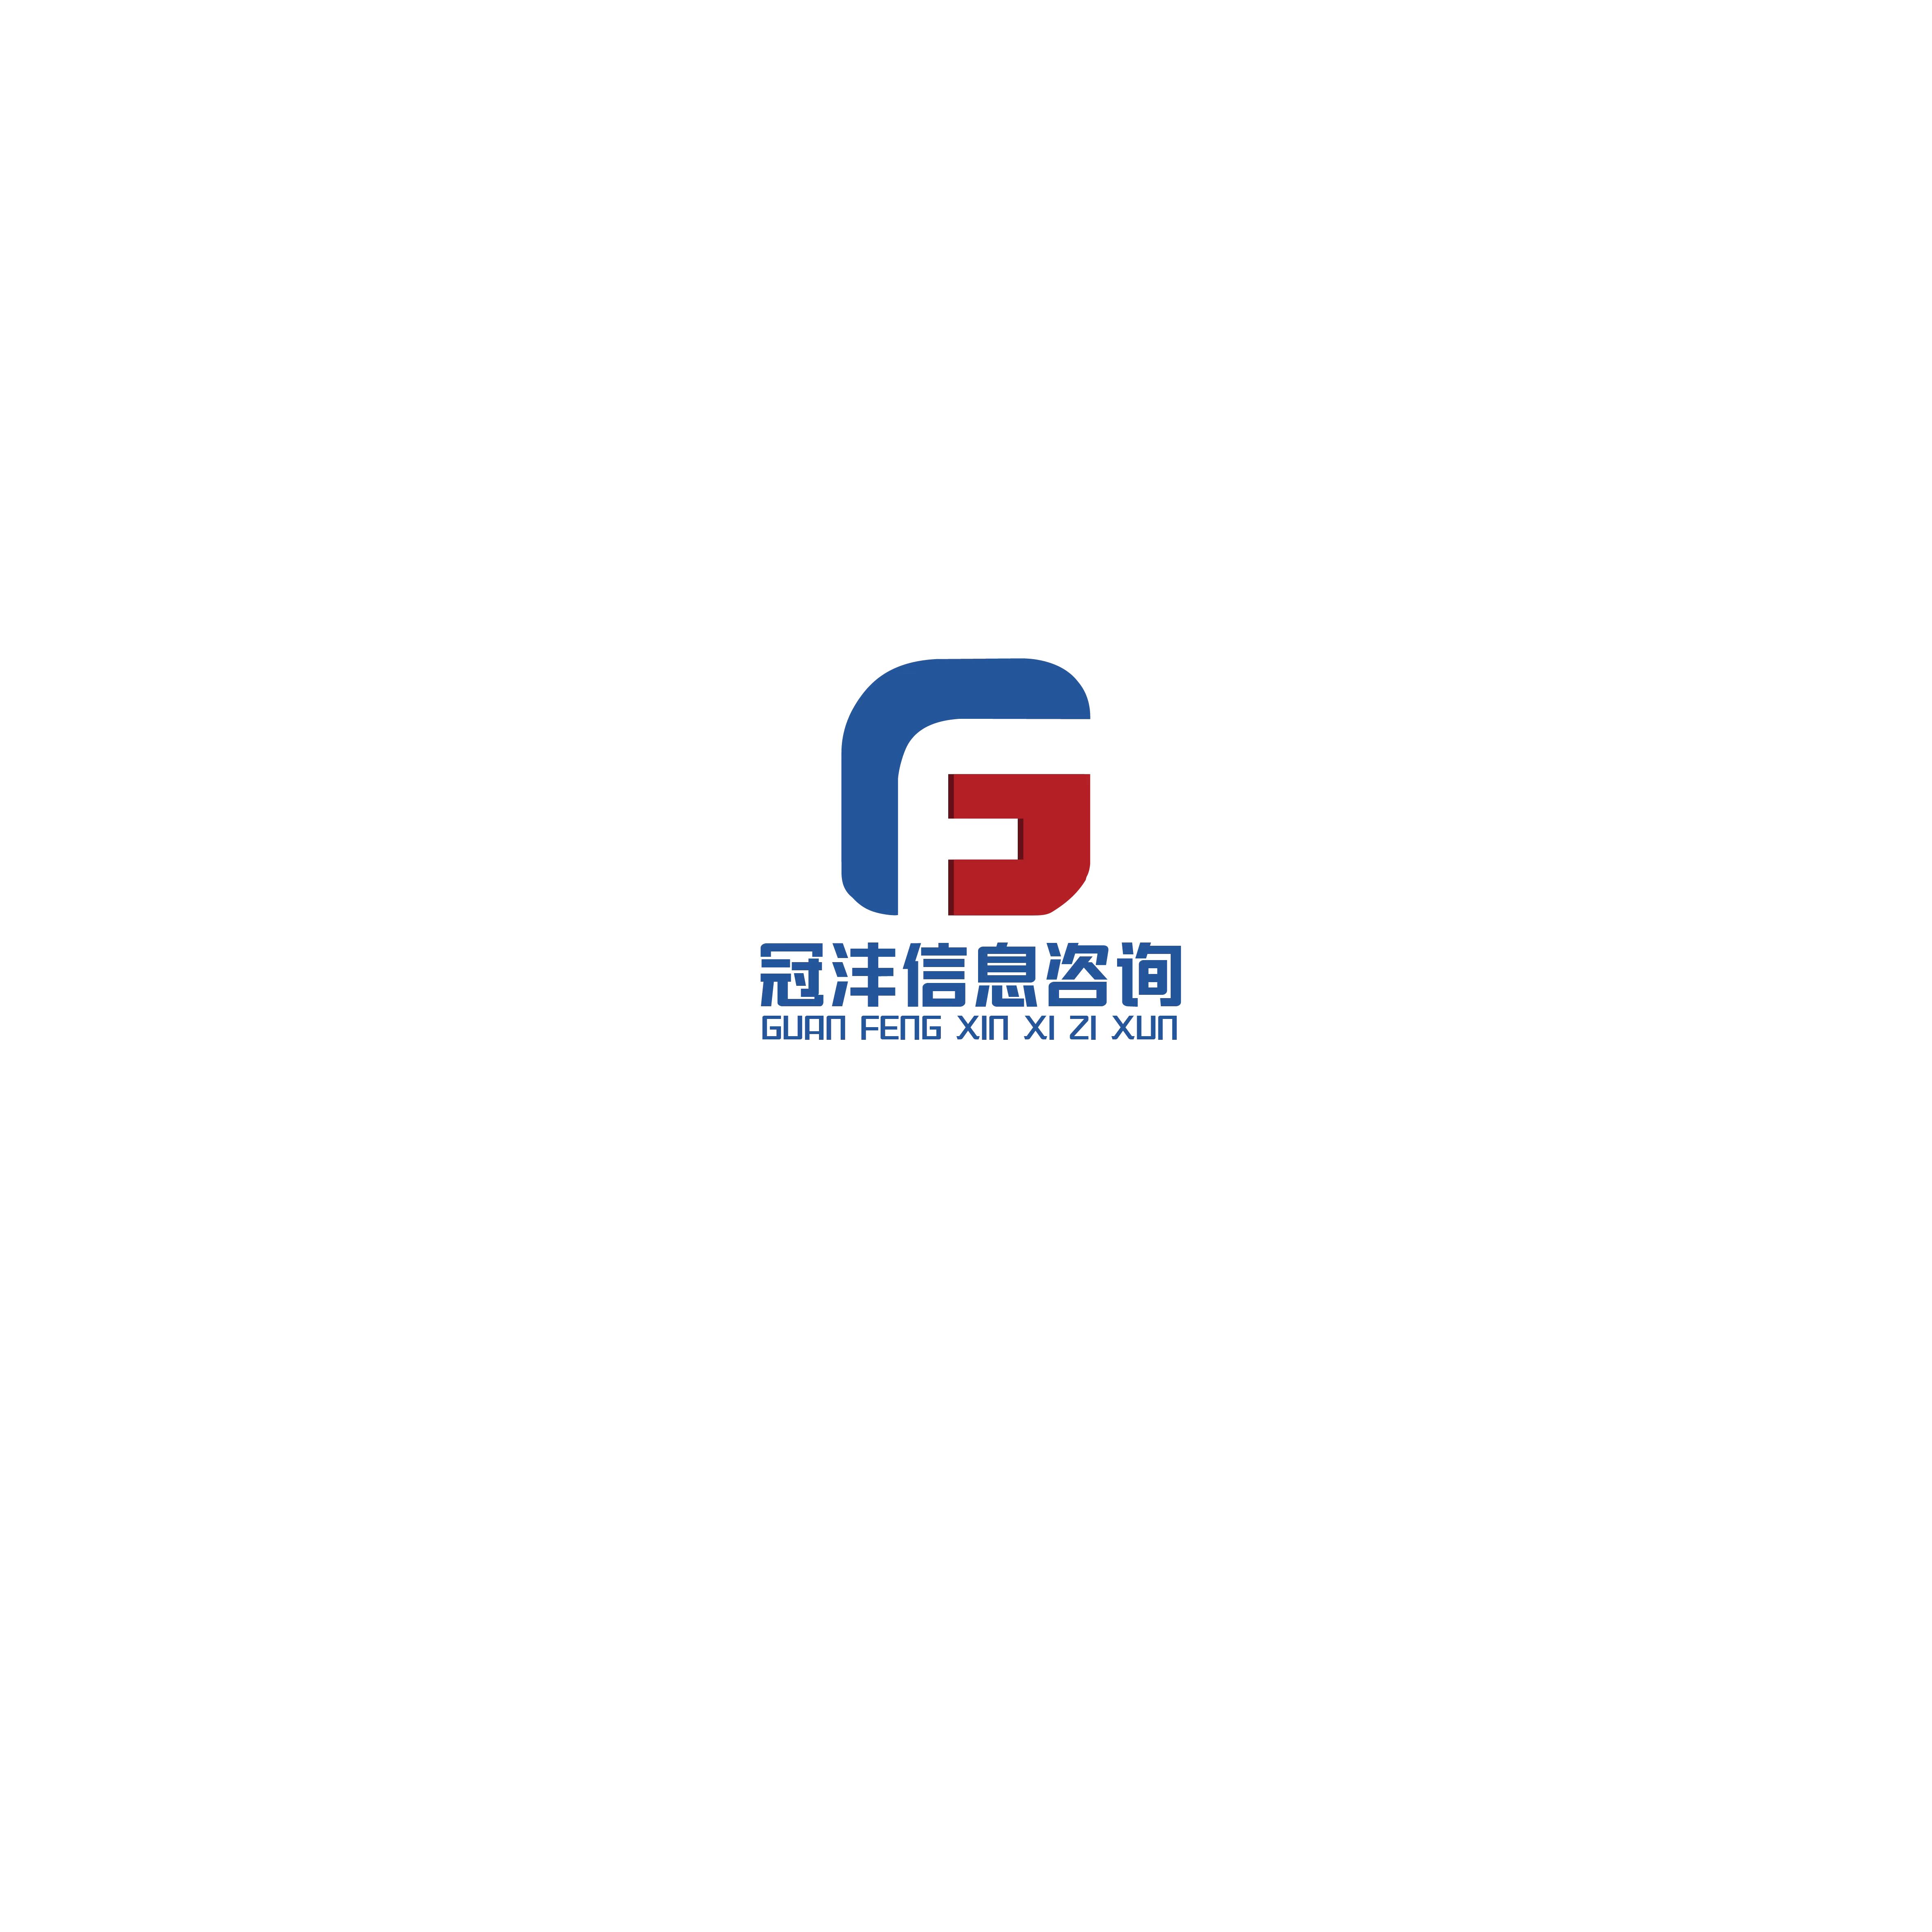 广东冠沣信息咨询有限公司 logo